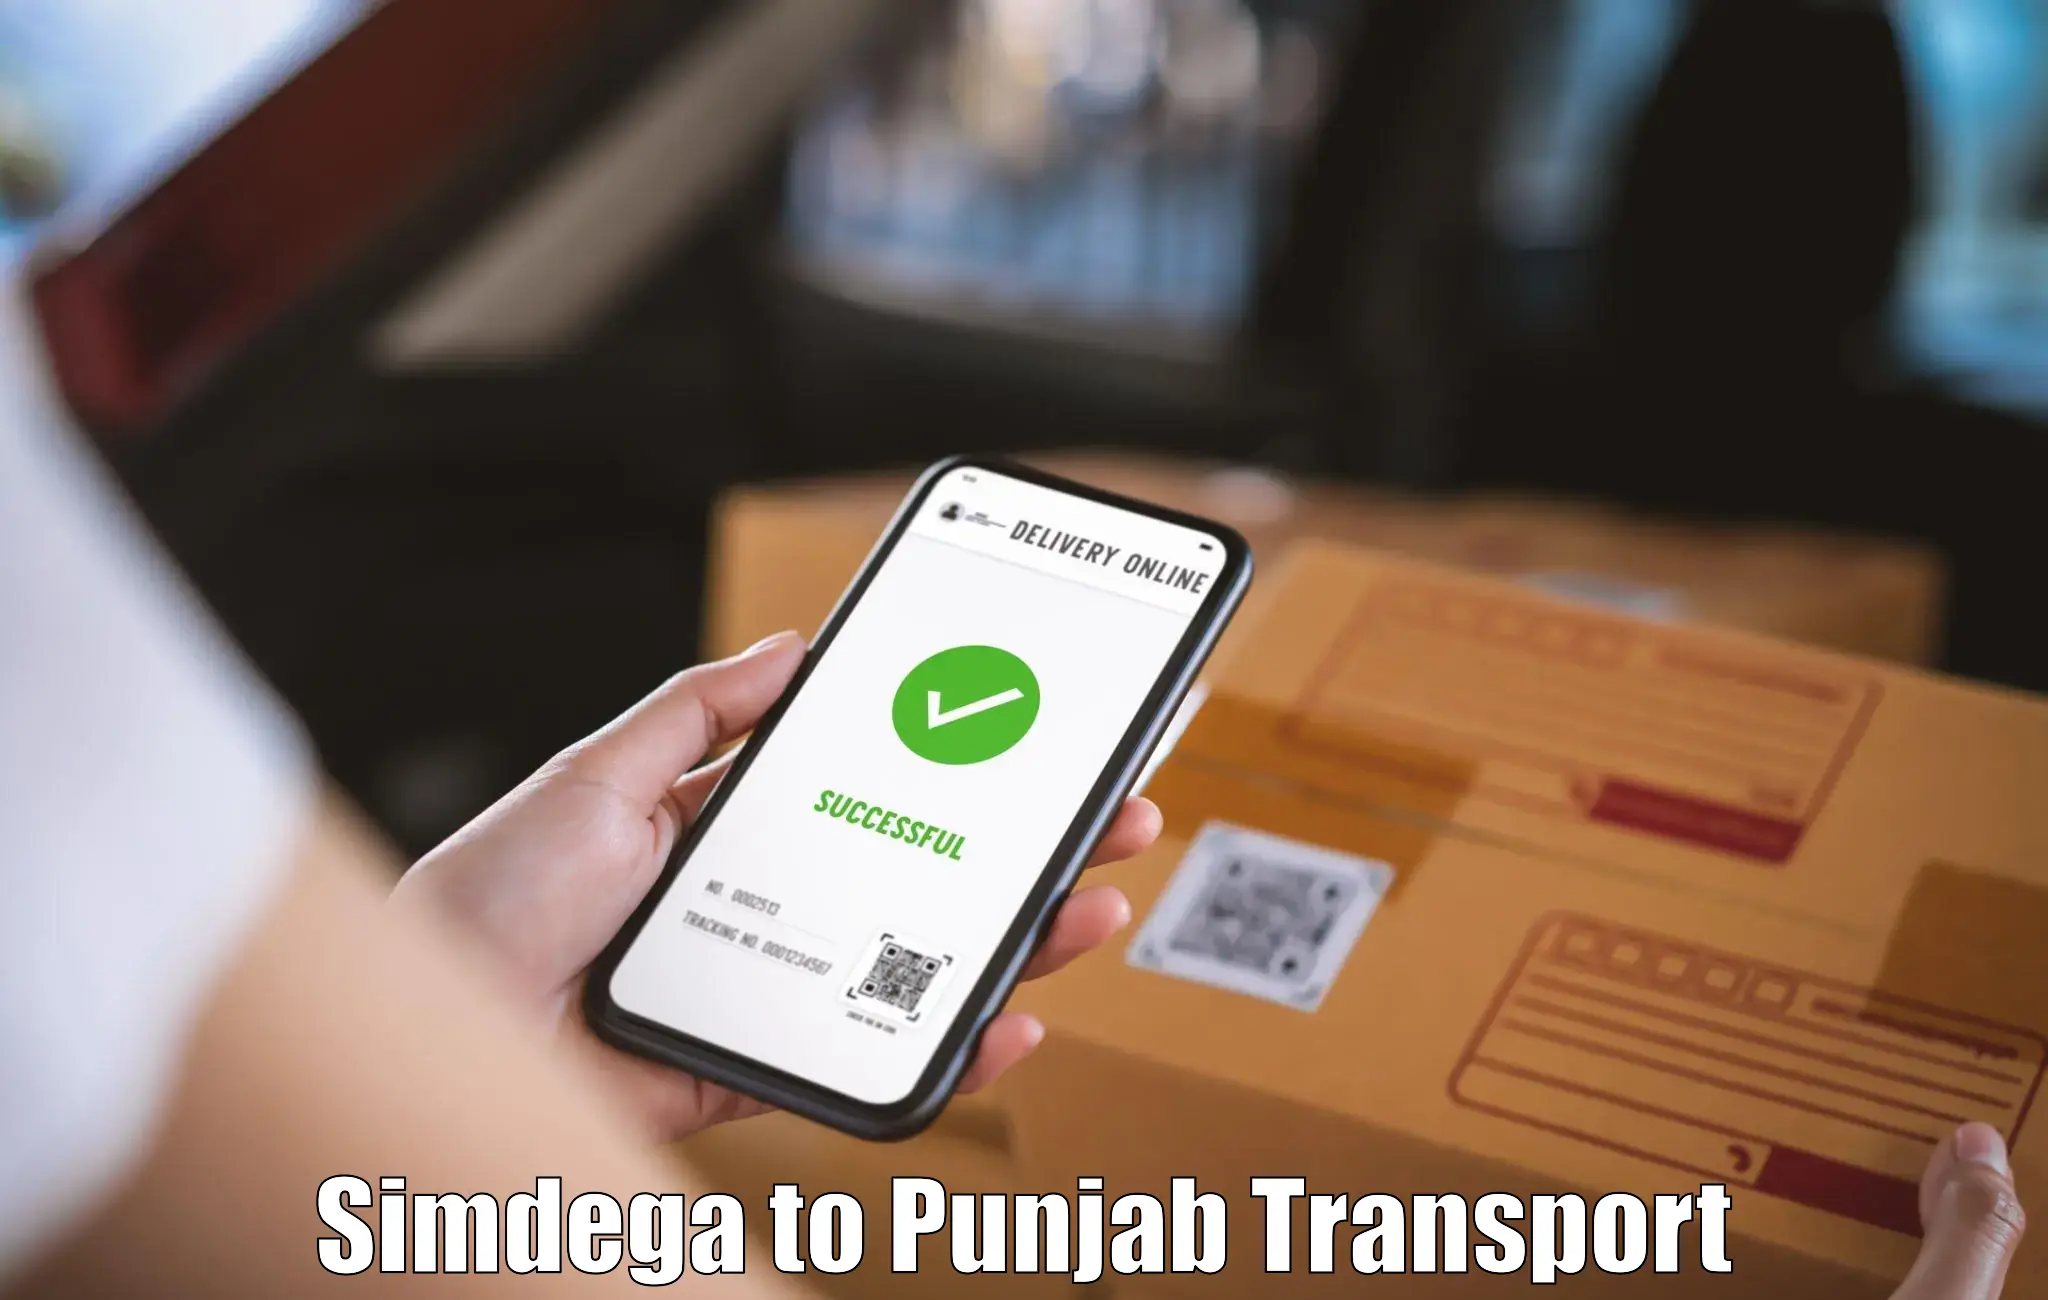 Delivery service Simdega to Sultanpur Lodhi